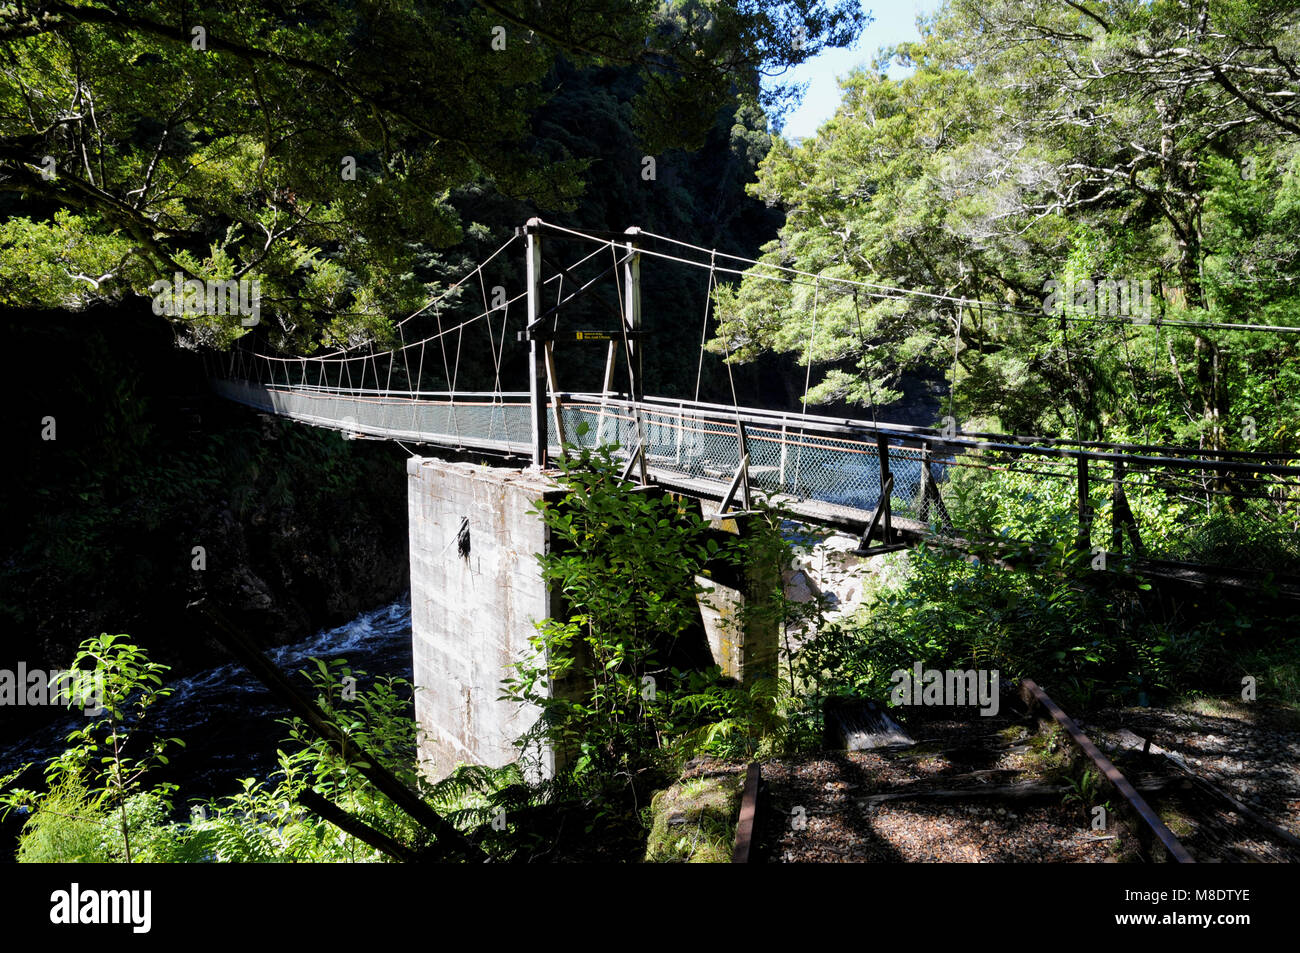 Die Ngakawau Suspension Bridge entlang der wunderschönen charmanten Creek Gehweg, die Brücke ist für bis zu 5 Personen. Stockfoto